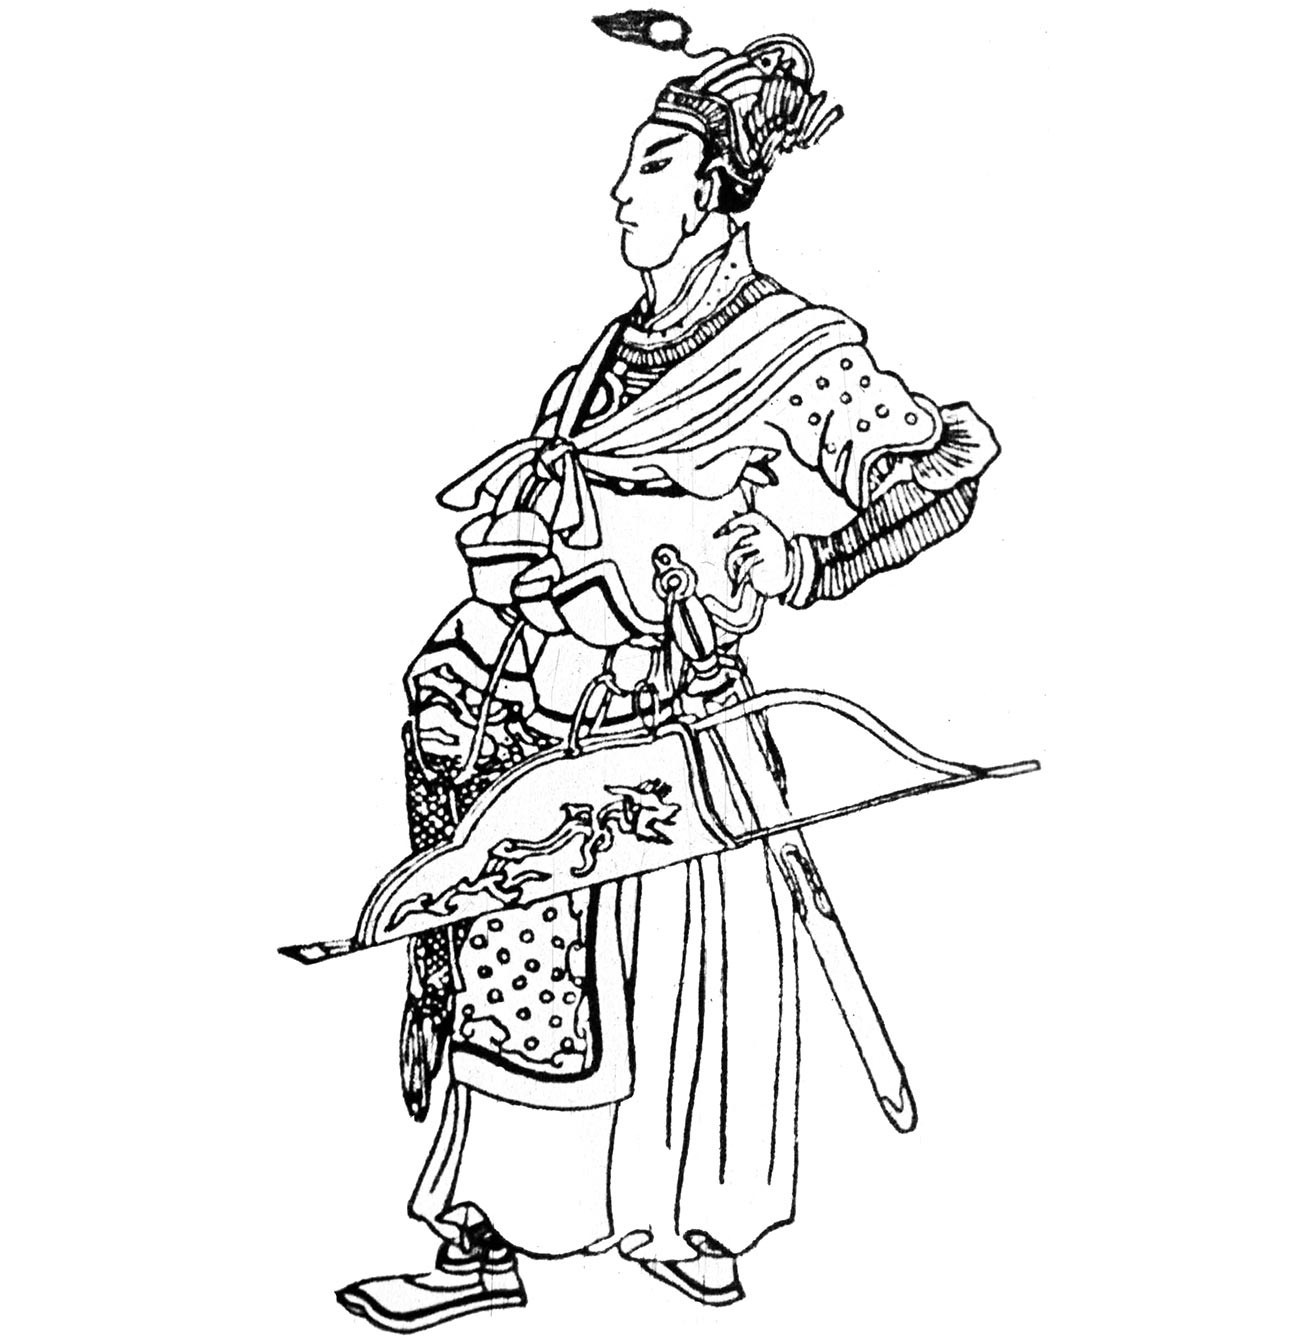 Batu Cã em gravura chinesa da Idade Média.